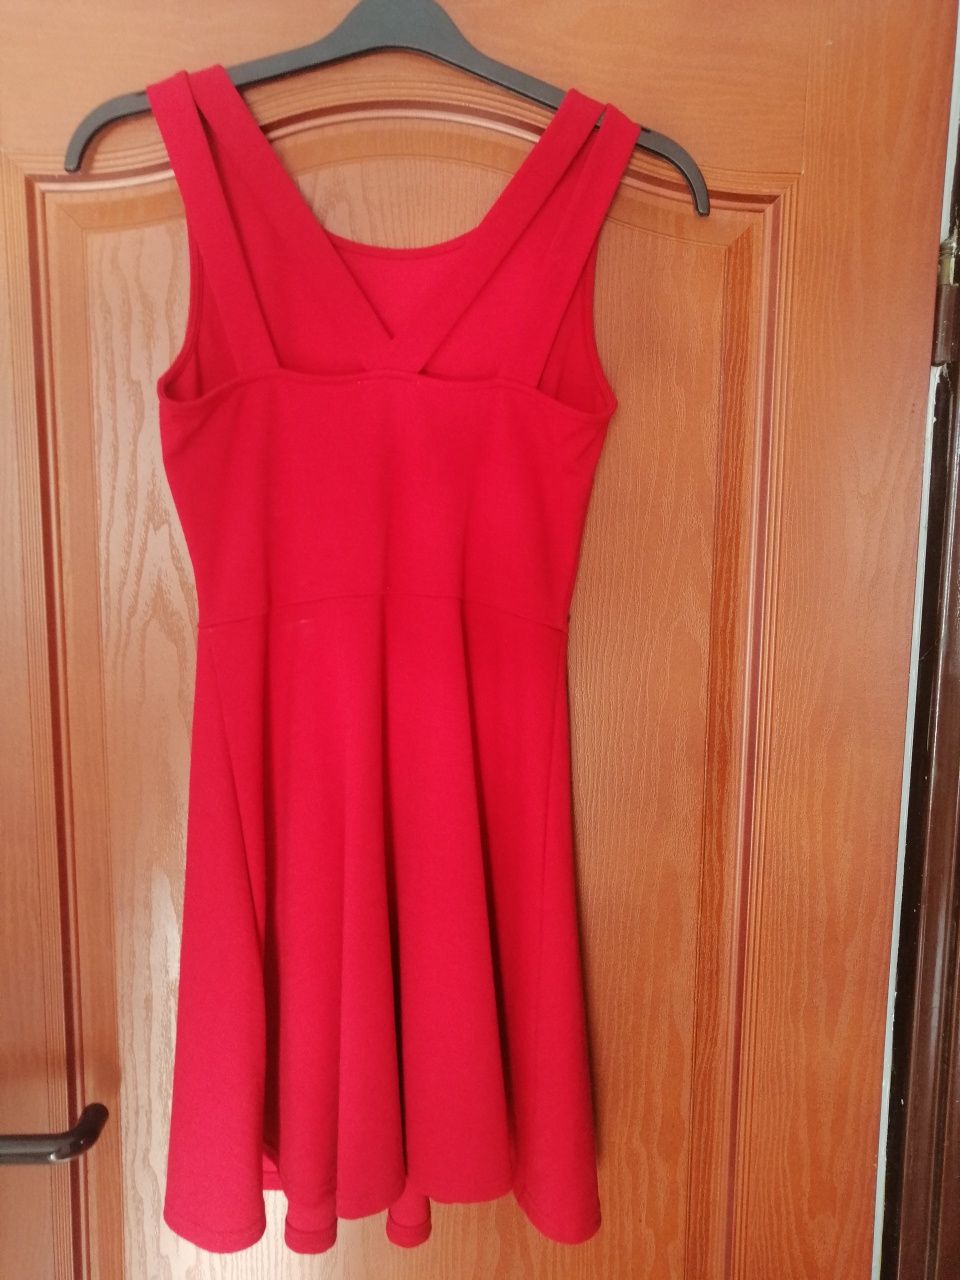 Czerwona sukienka rozmiar S idealna na święta